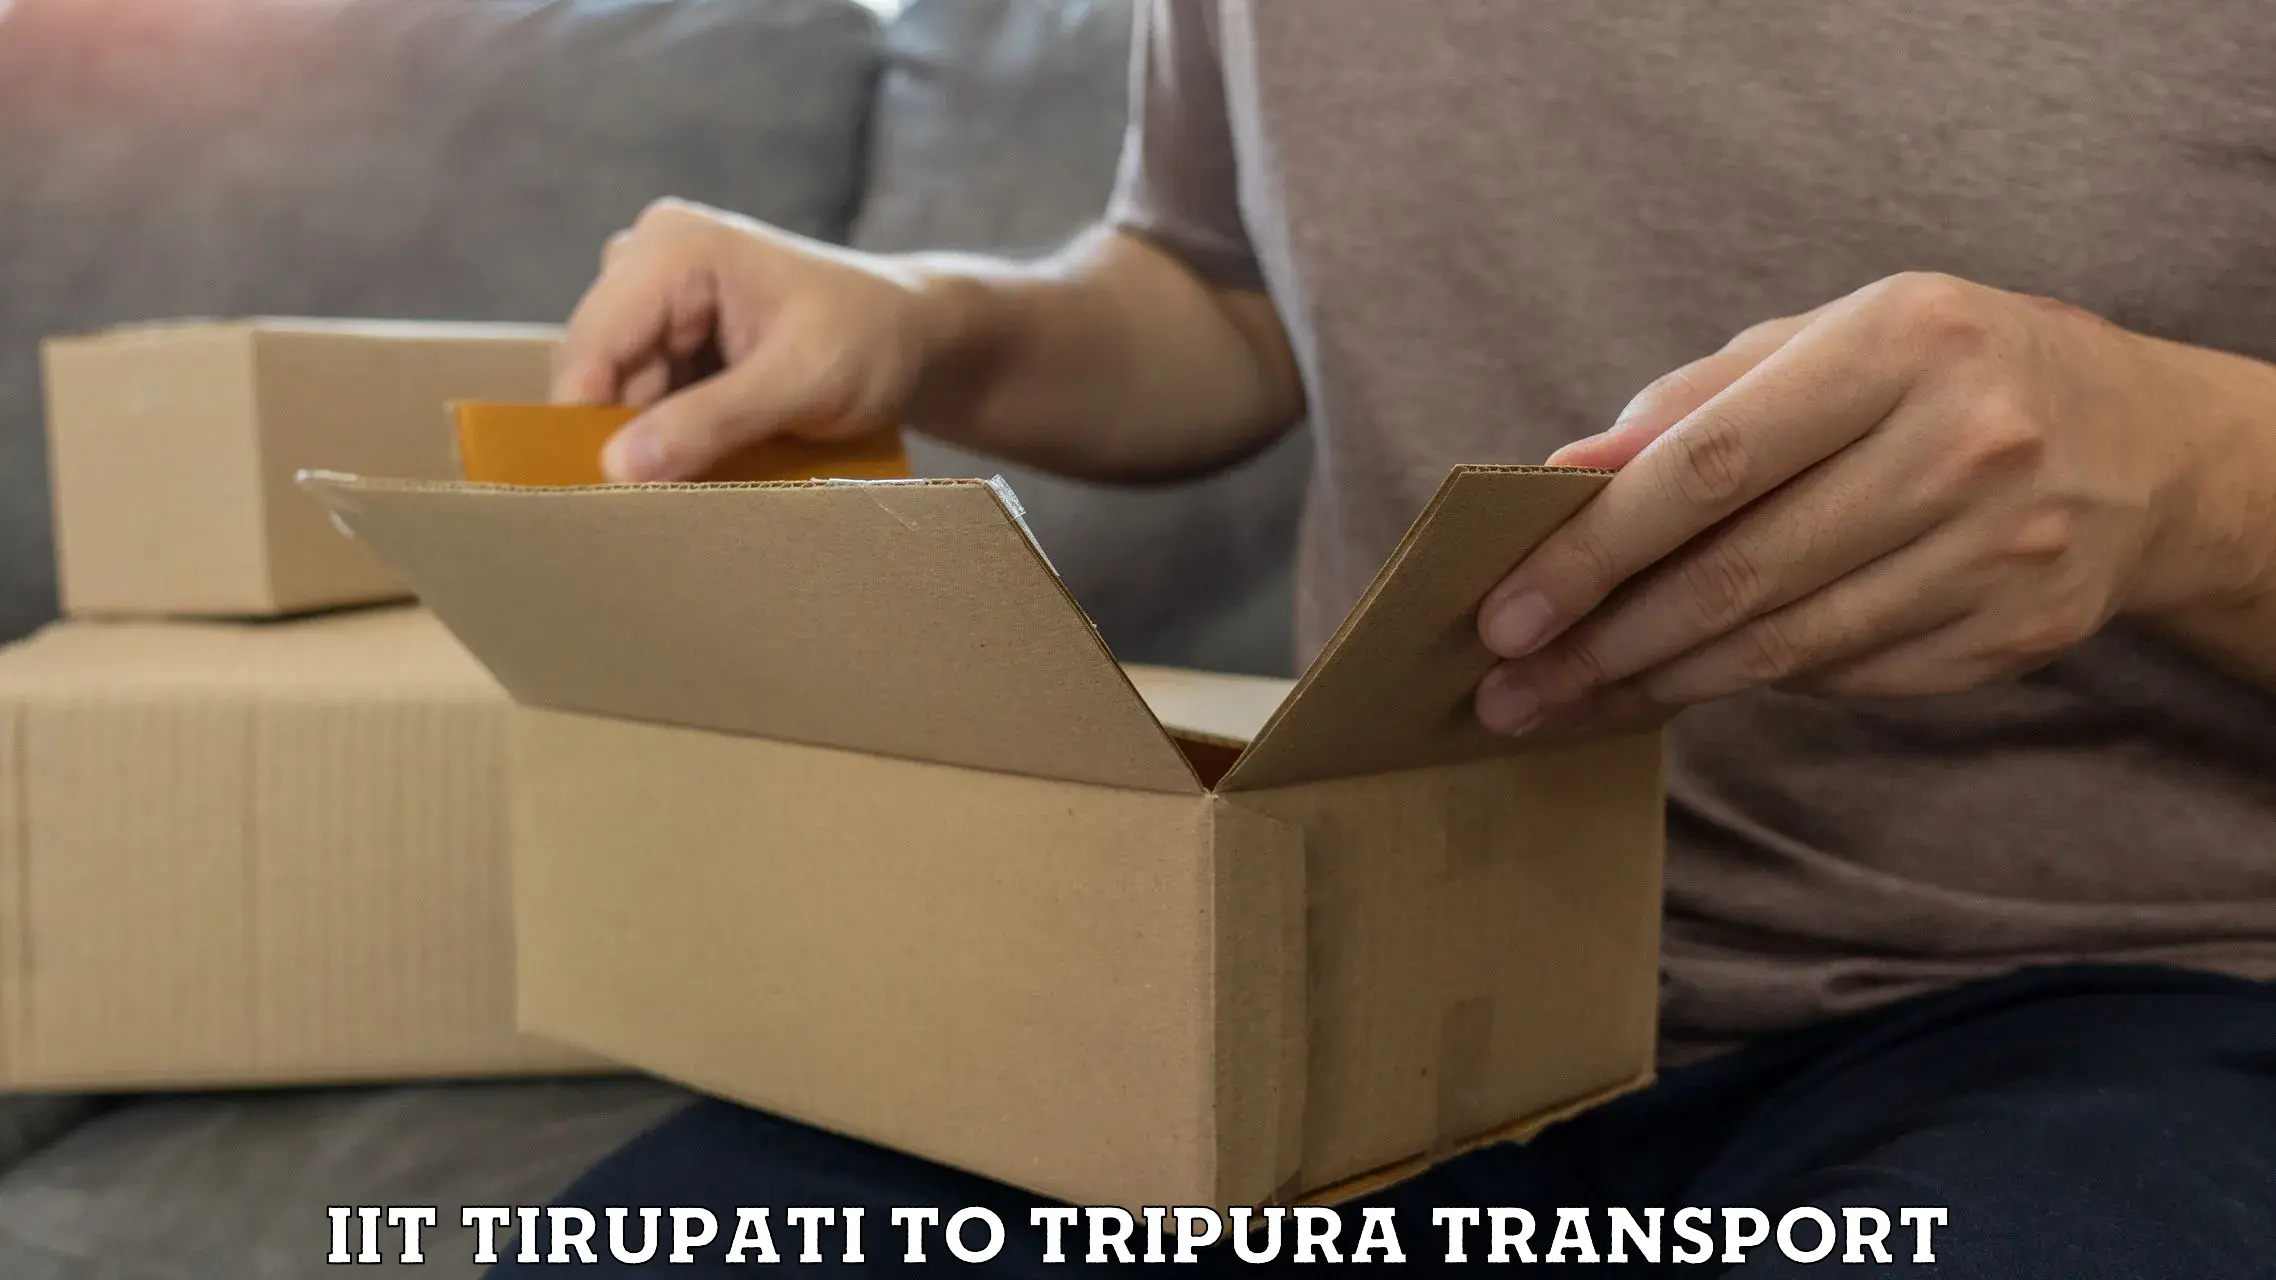 Vehicle transport services IIT Tirupati to Udaipur Tripura